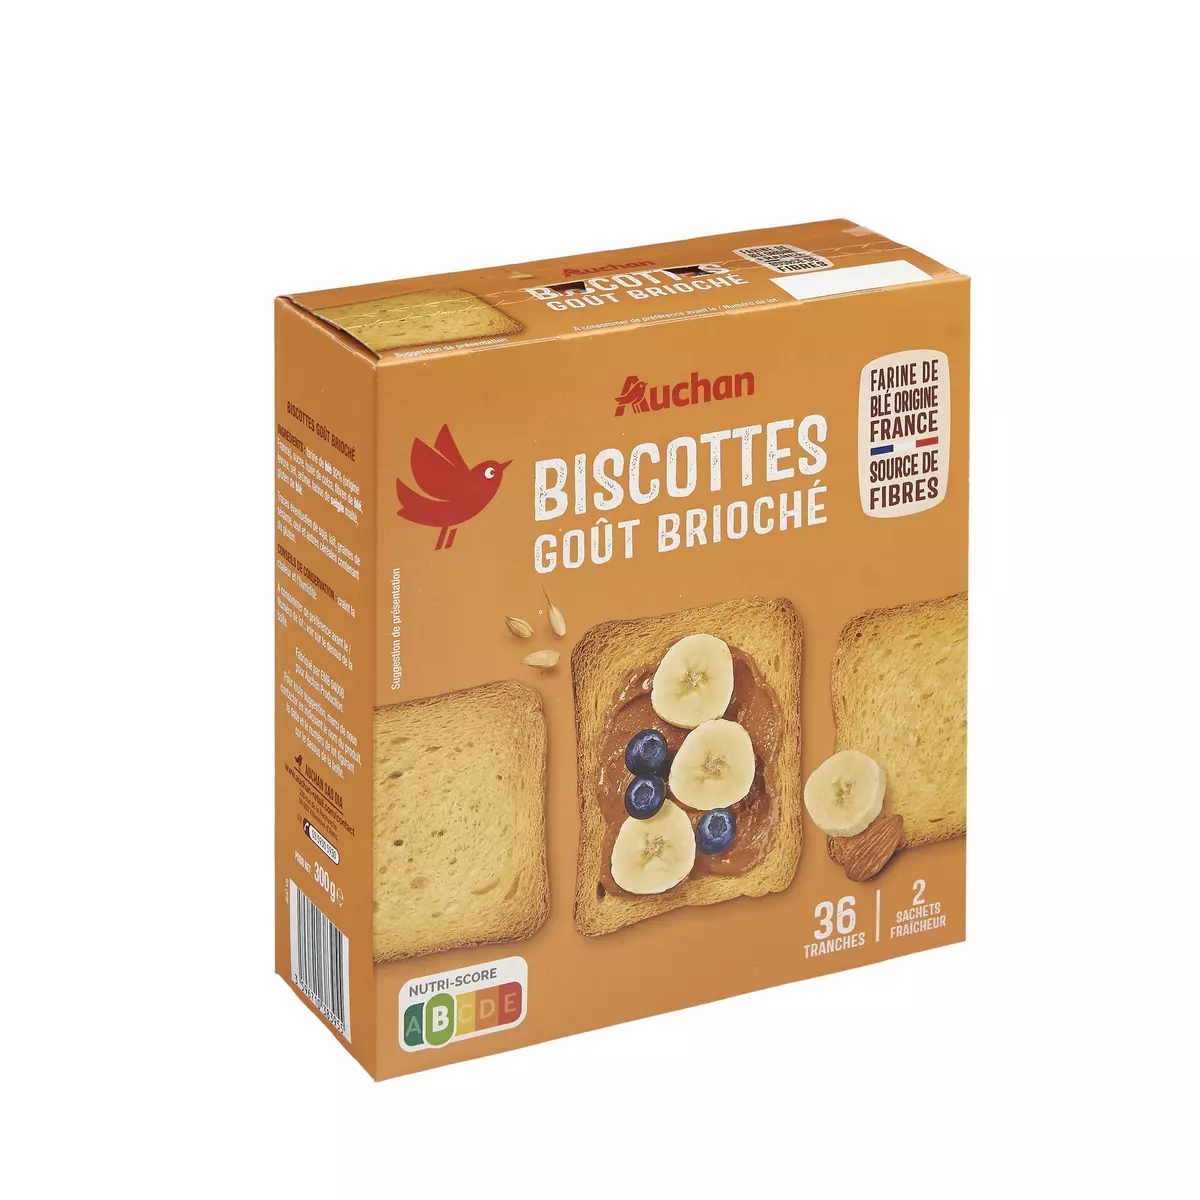 AUCHAN Biscottes saveur briochée sans huile de palme 2x18 biscottes 300g